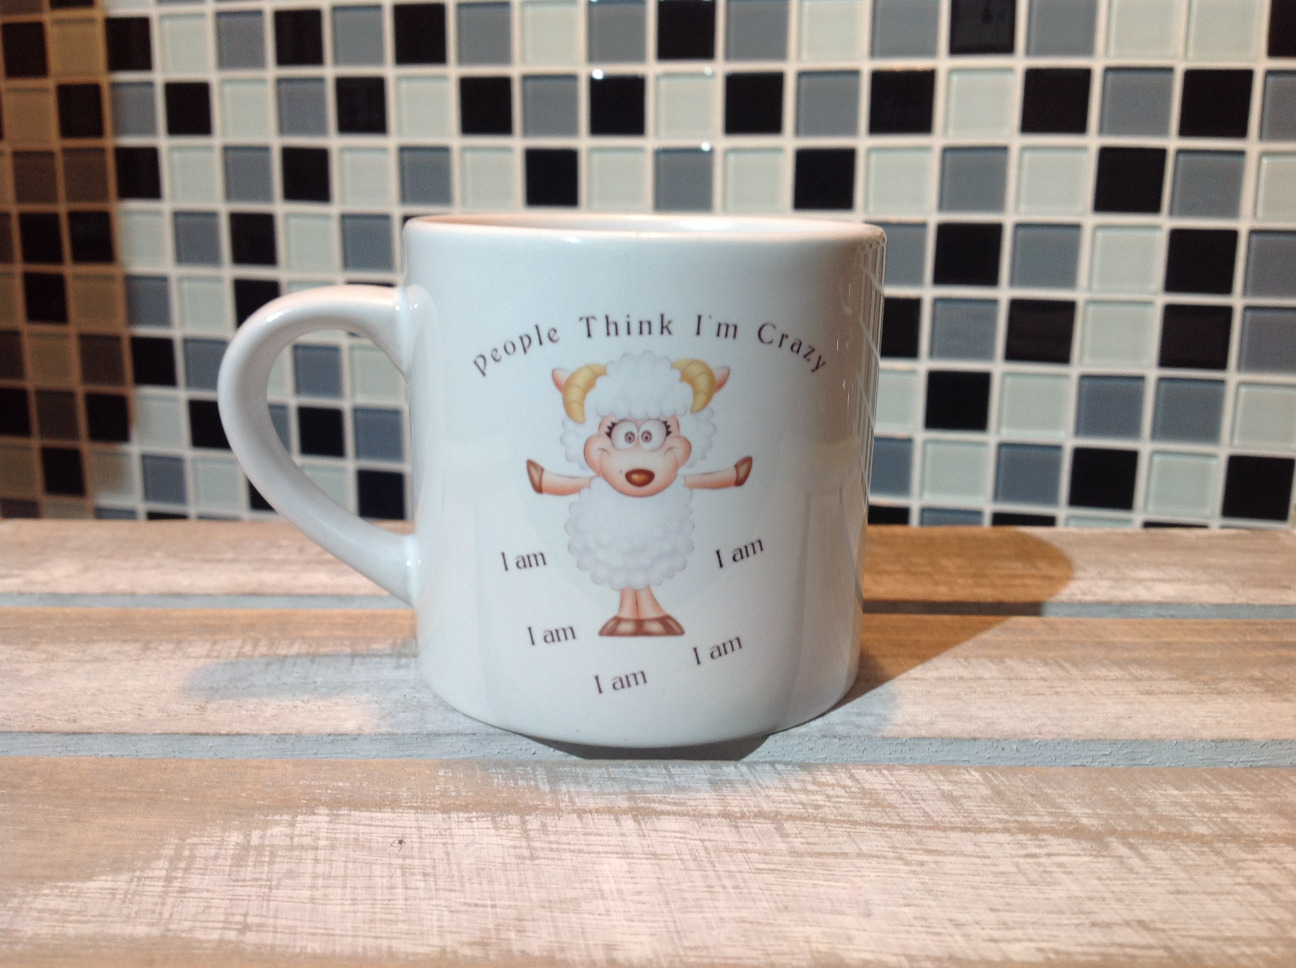 Sheep Espresso Mug - People Think I'm Crazy .. I am